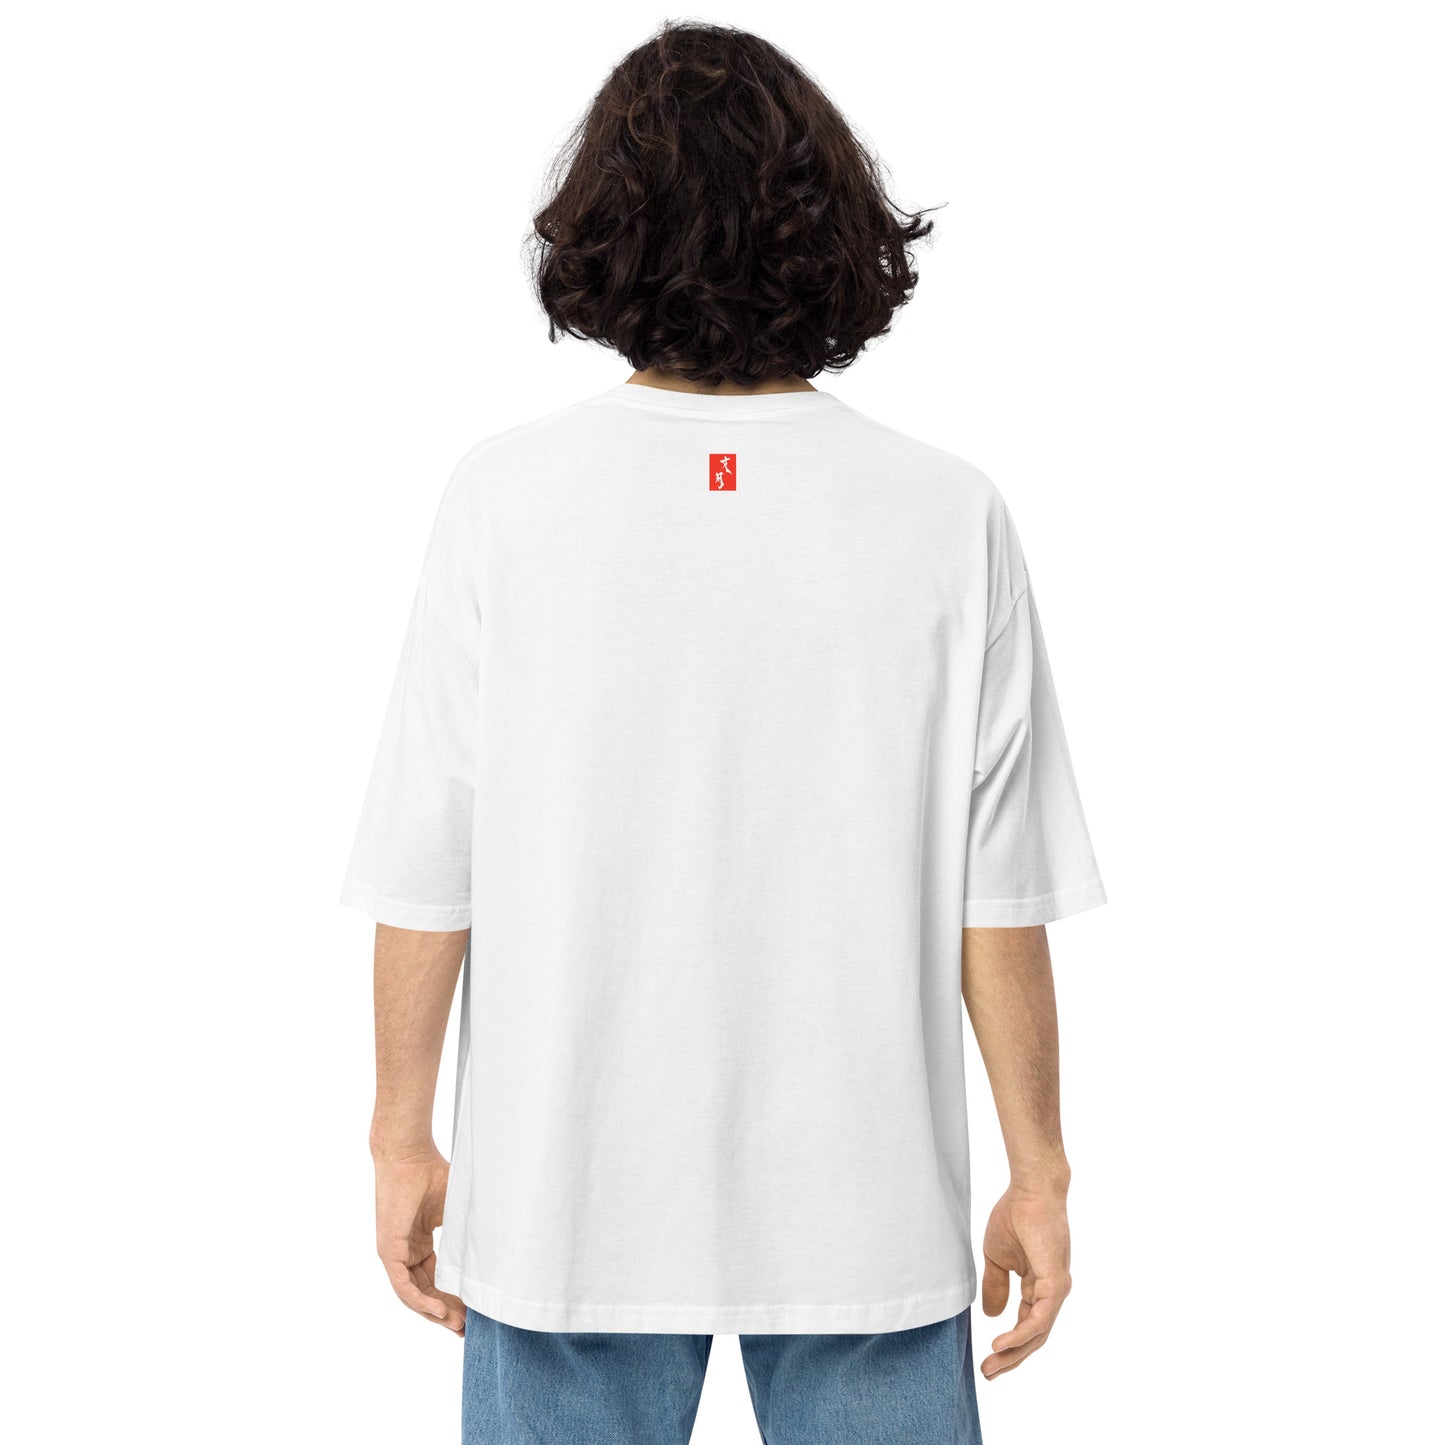 【伝統色20】ユニセックス ビッグシルエット Tシャツ【伝統色のいろは】